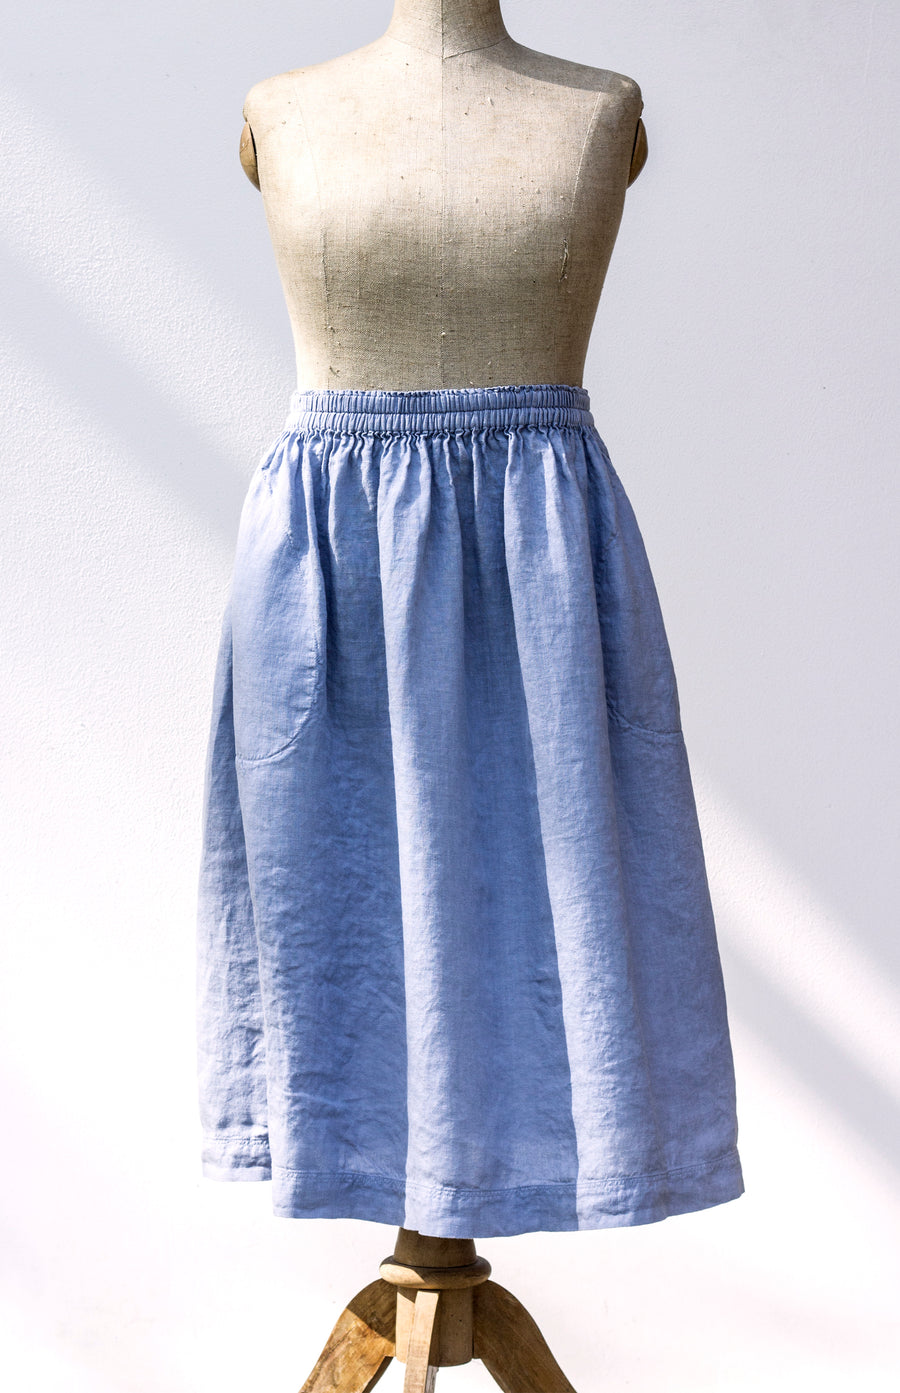 Extra jemná ZEN sukně v odstínu Kentucky Blue